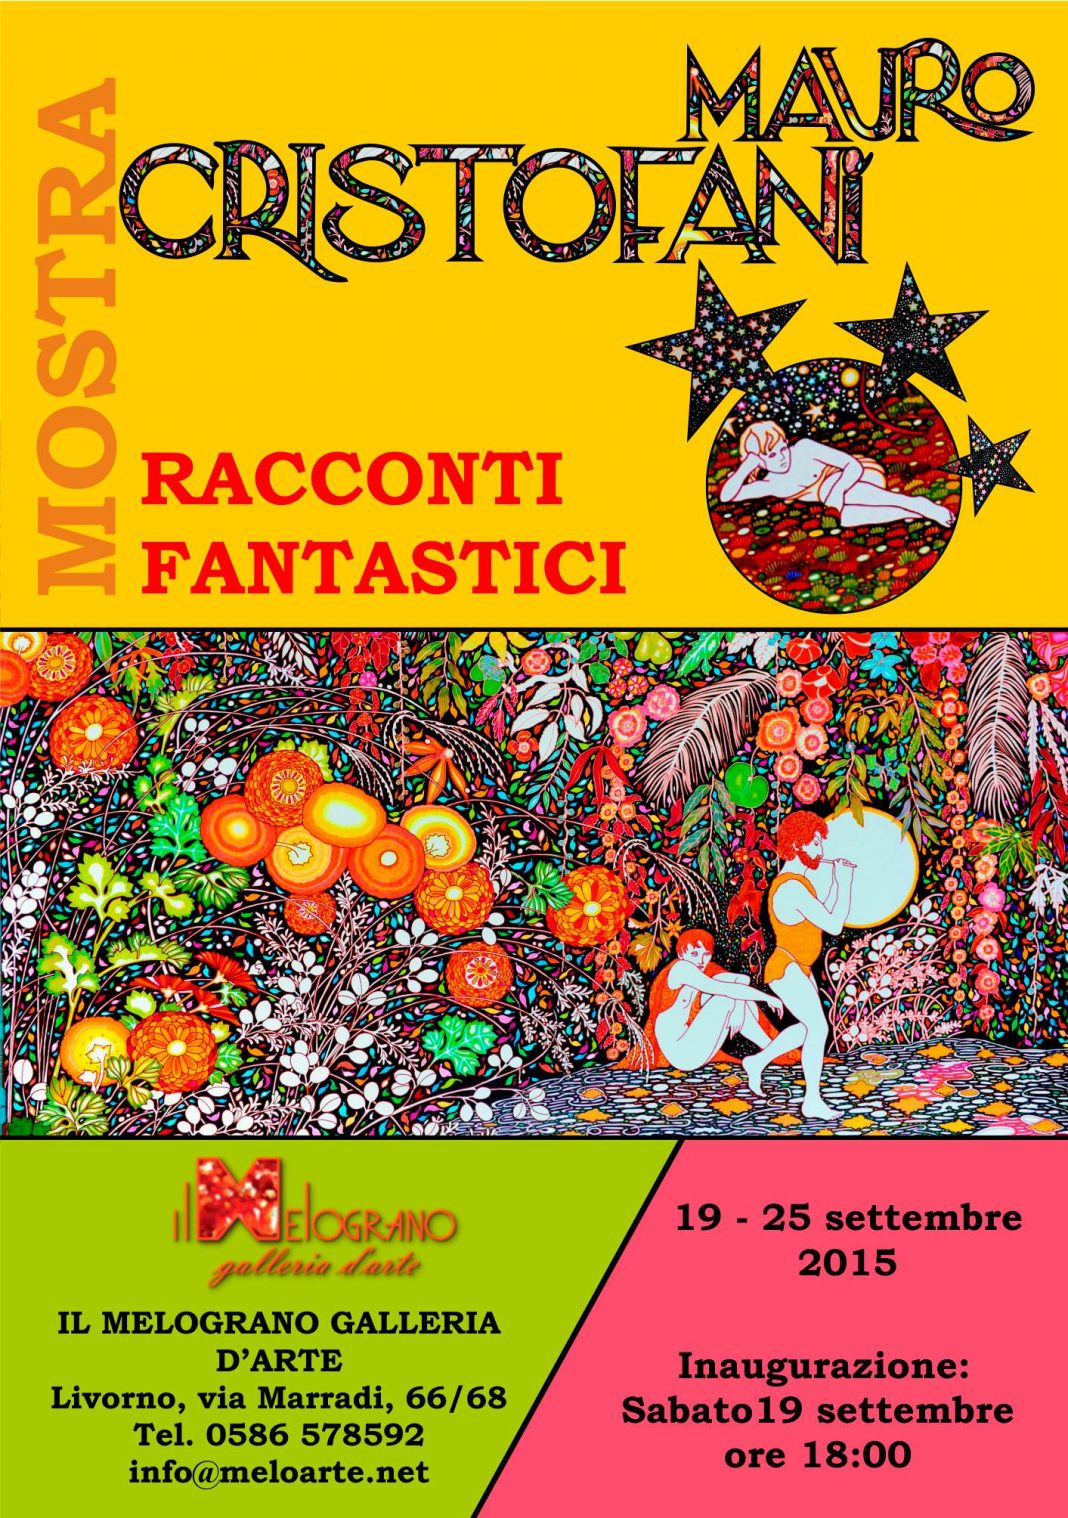 Mauro Cristofani – Racconti Fantasticihttps://www.exibart.com/repository/media/eventi/2015/09/mauro-cristofani-8211-racconti-fantastici-2-1068x1518.jpg